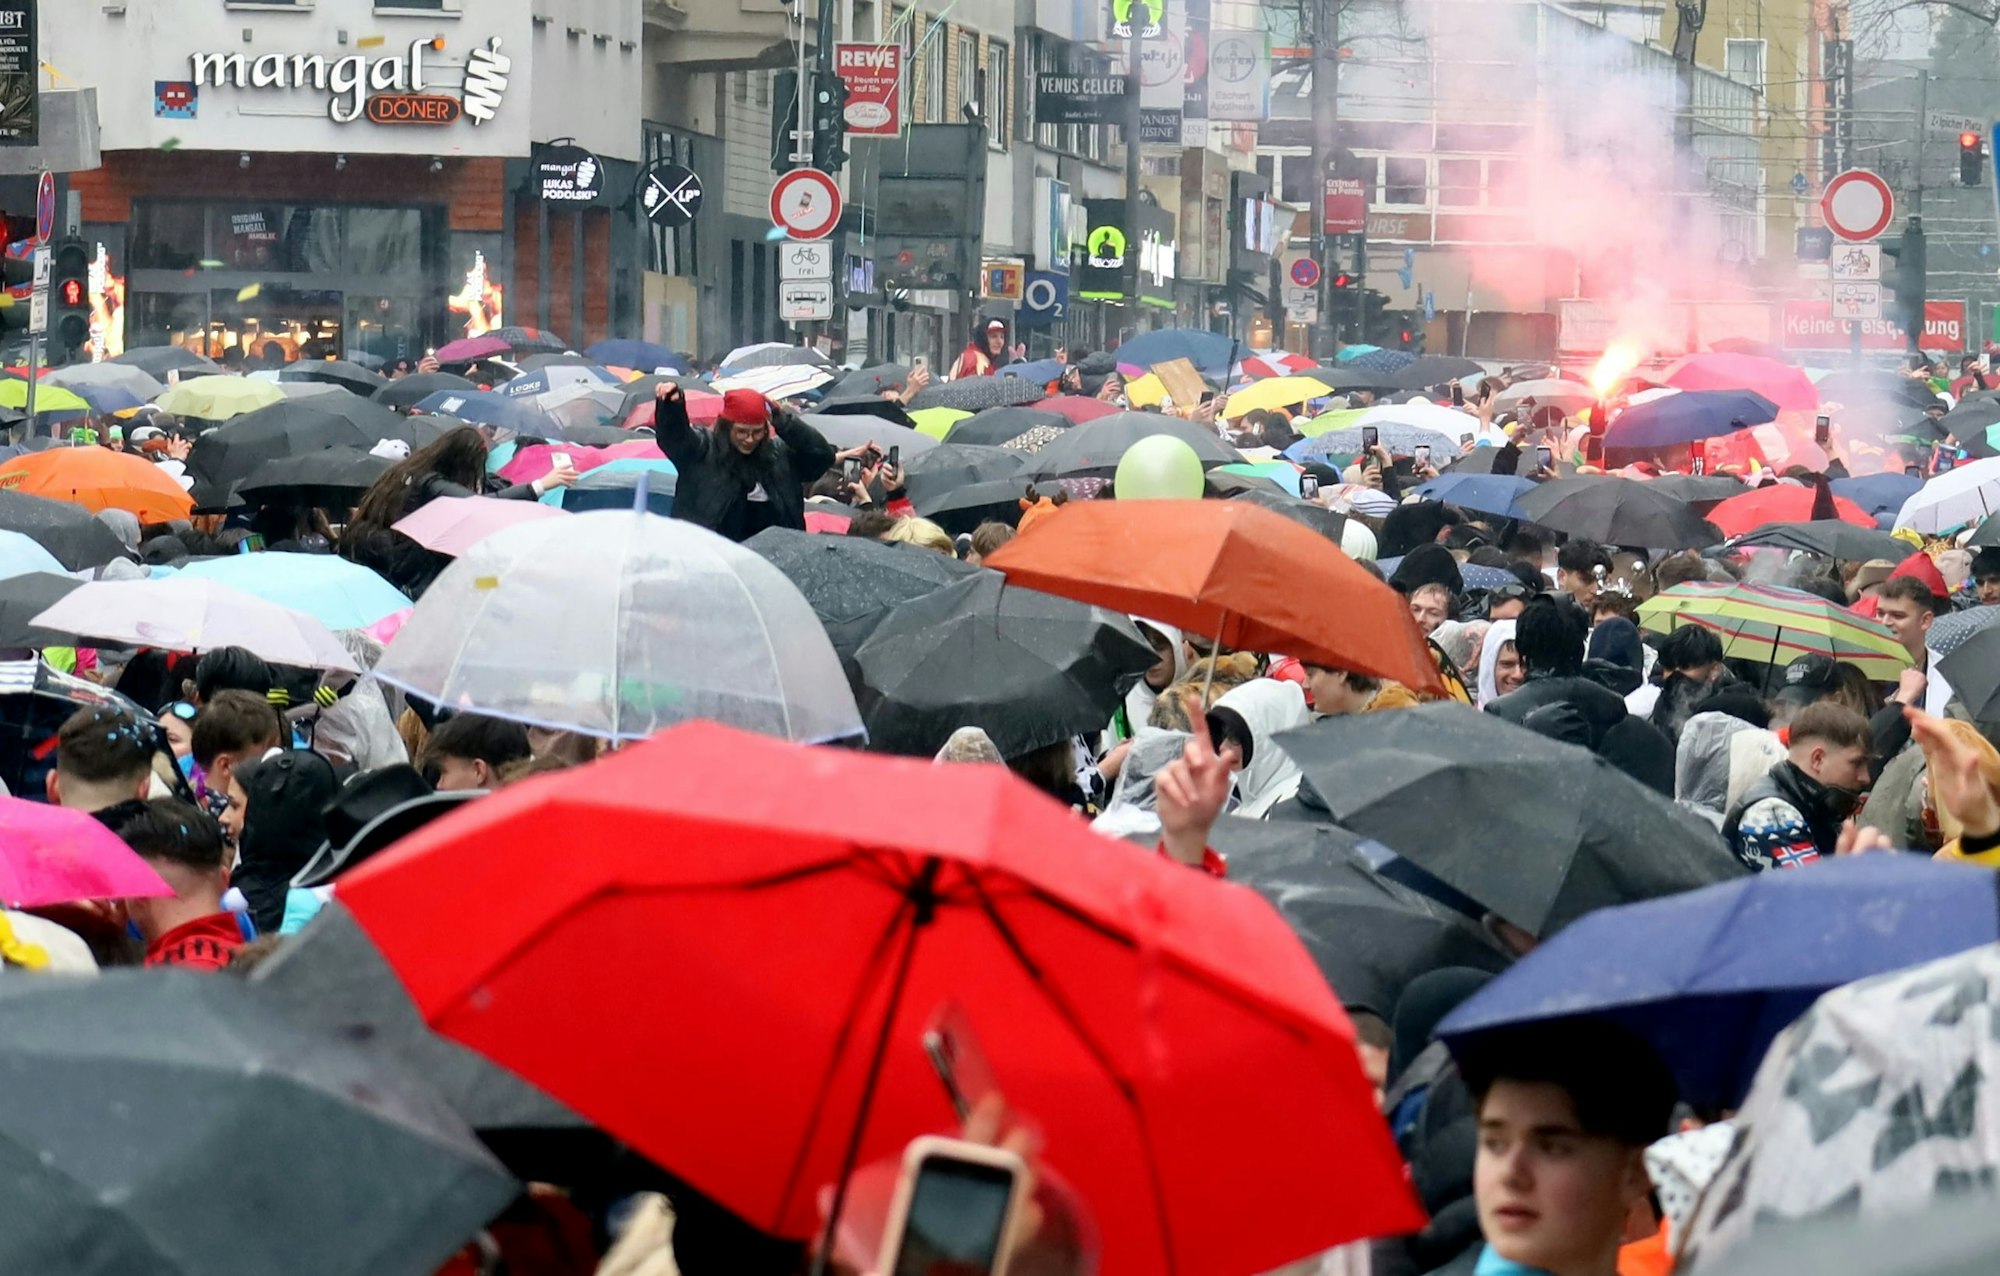 Blick auf Regenschirme auf der Straße, im Hintergrund zündet jemand ein Bengalo.